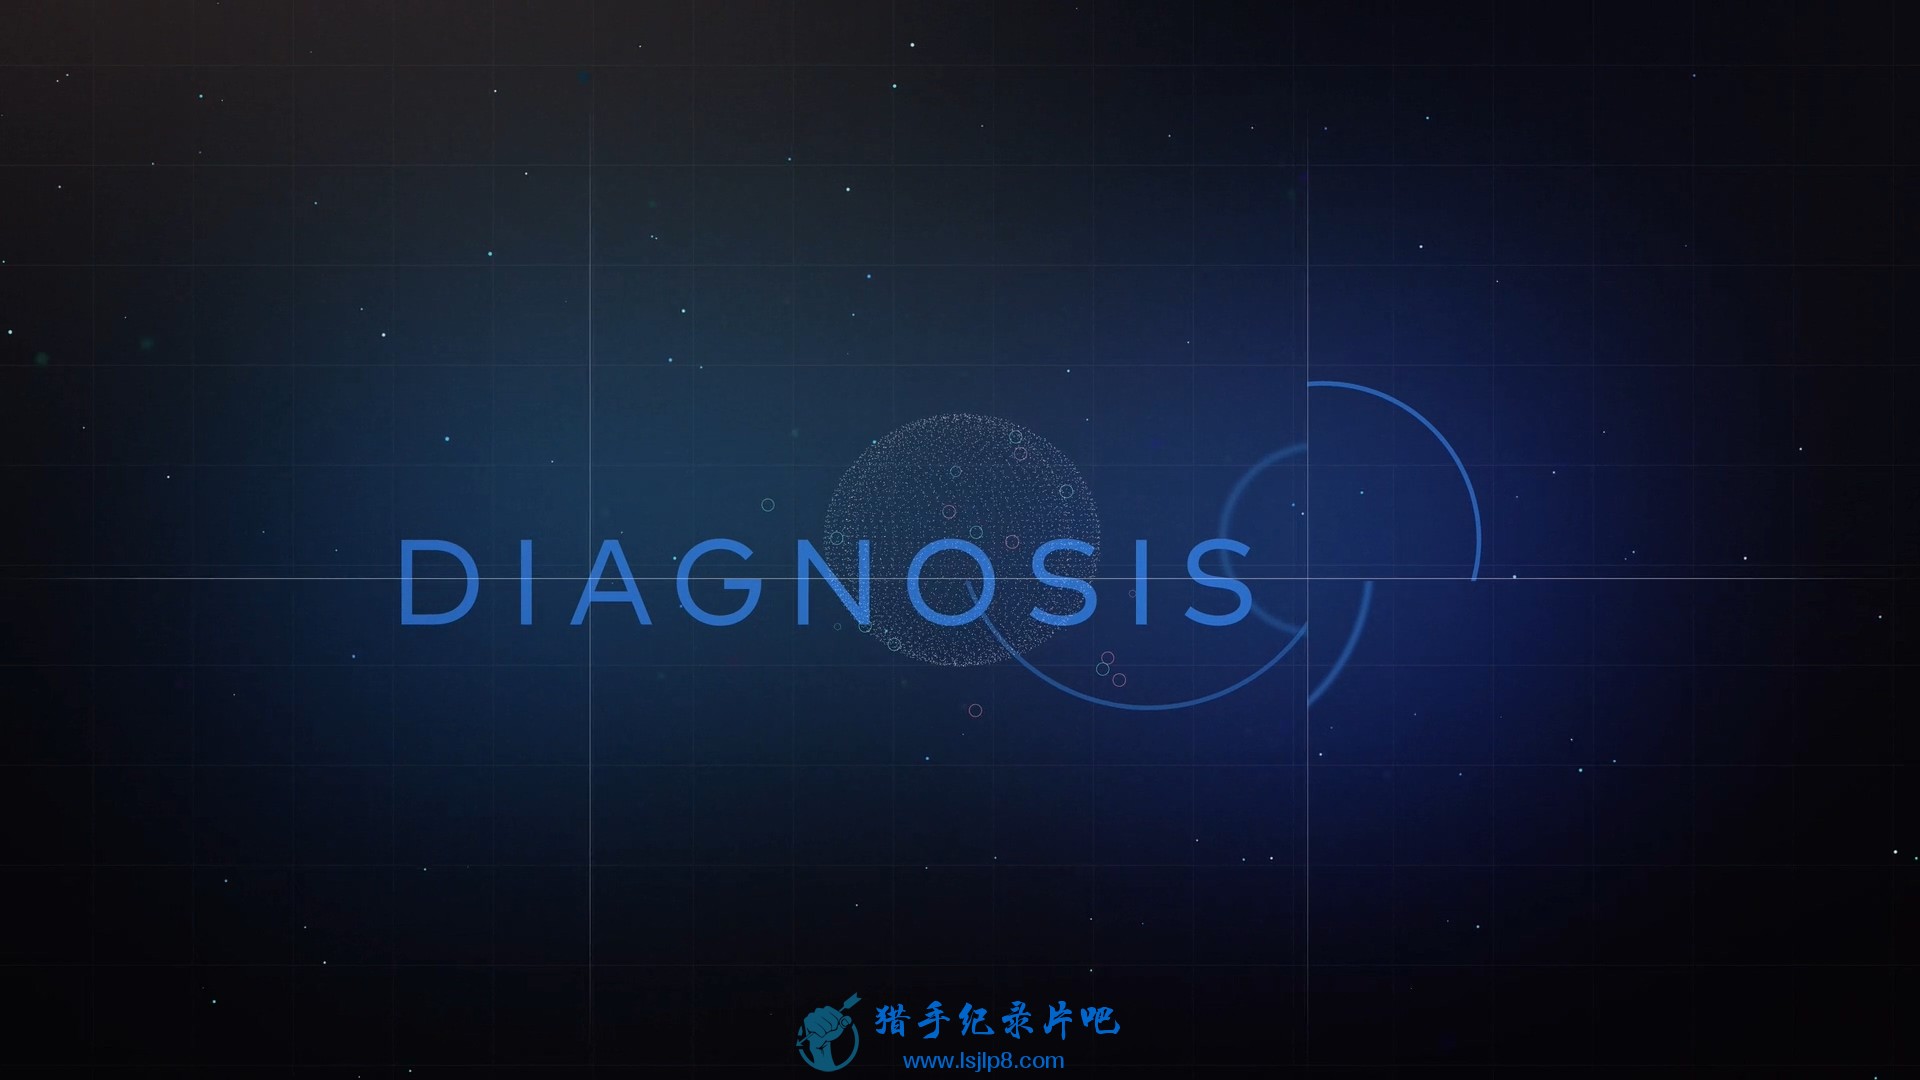 Diagnosis.S01E01.1080p.WEB.x264-WEBTUBE.mkv_20190917_130051.845.jpg